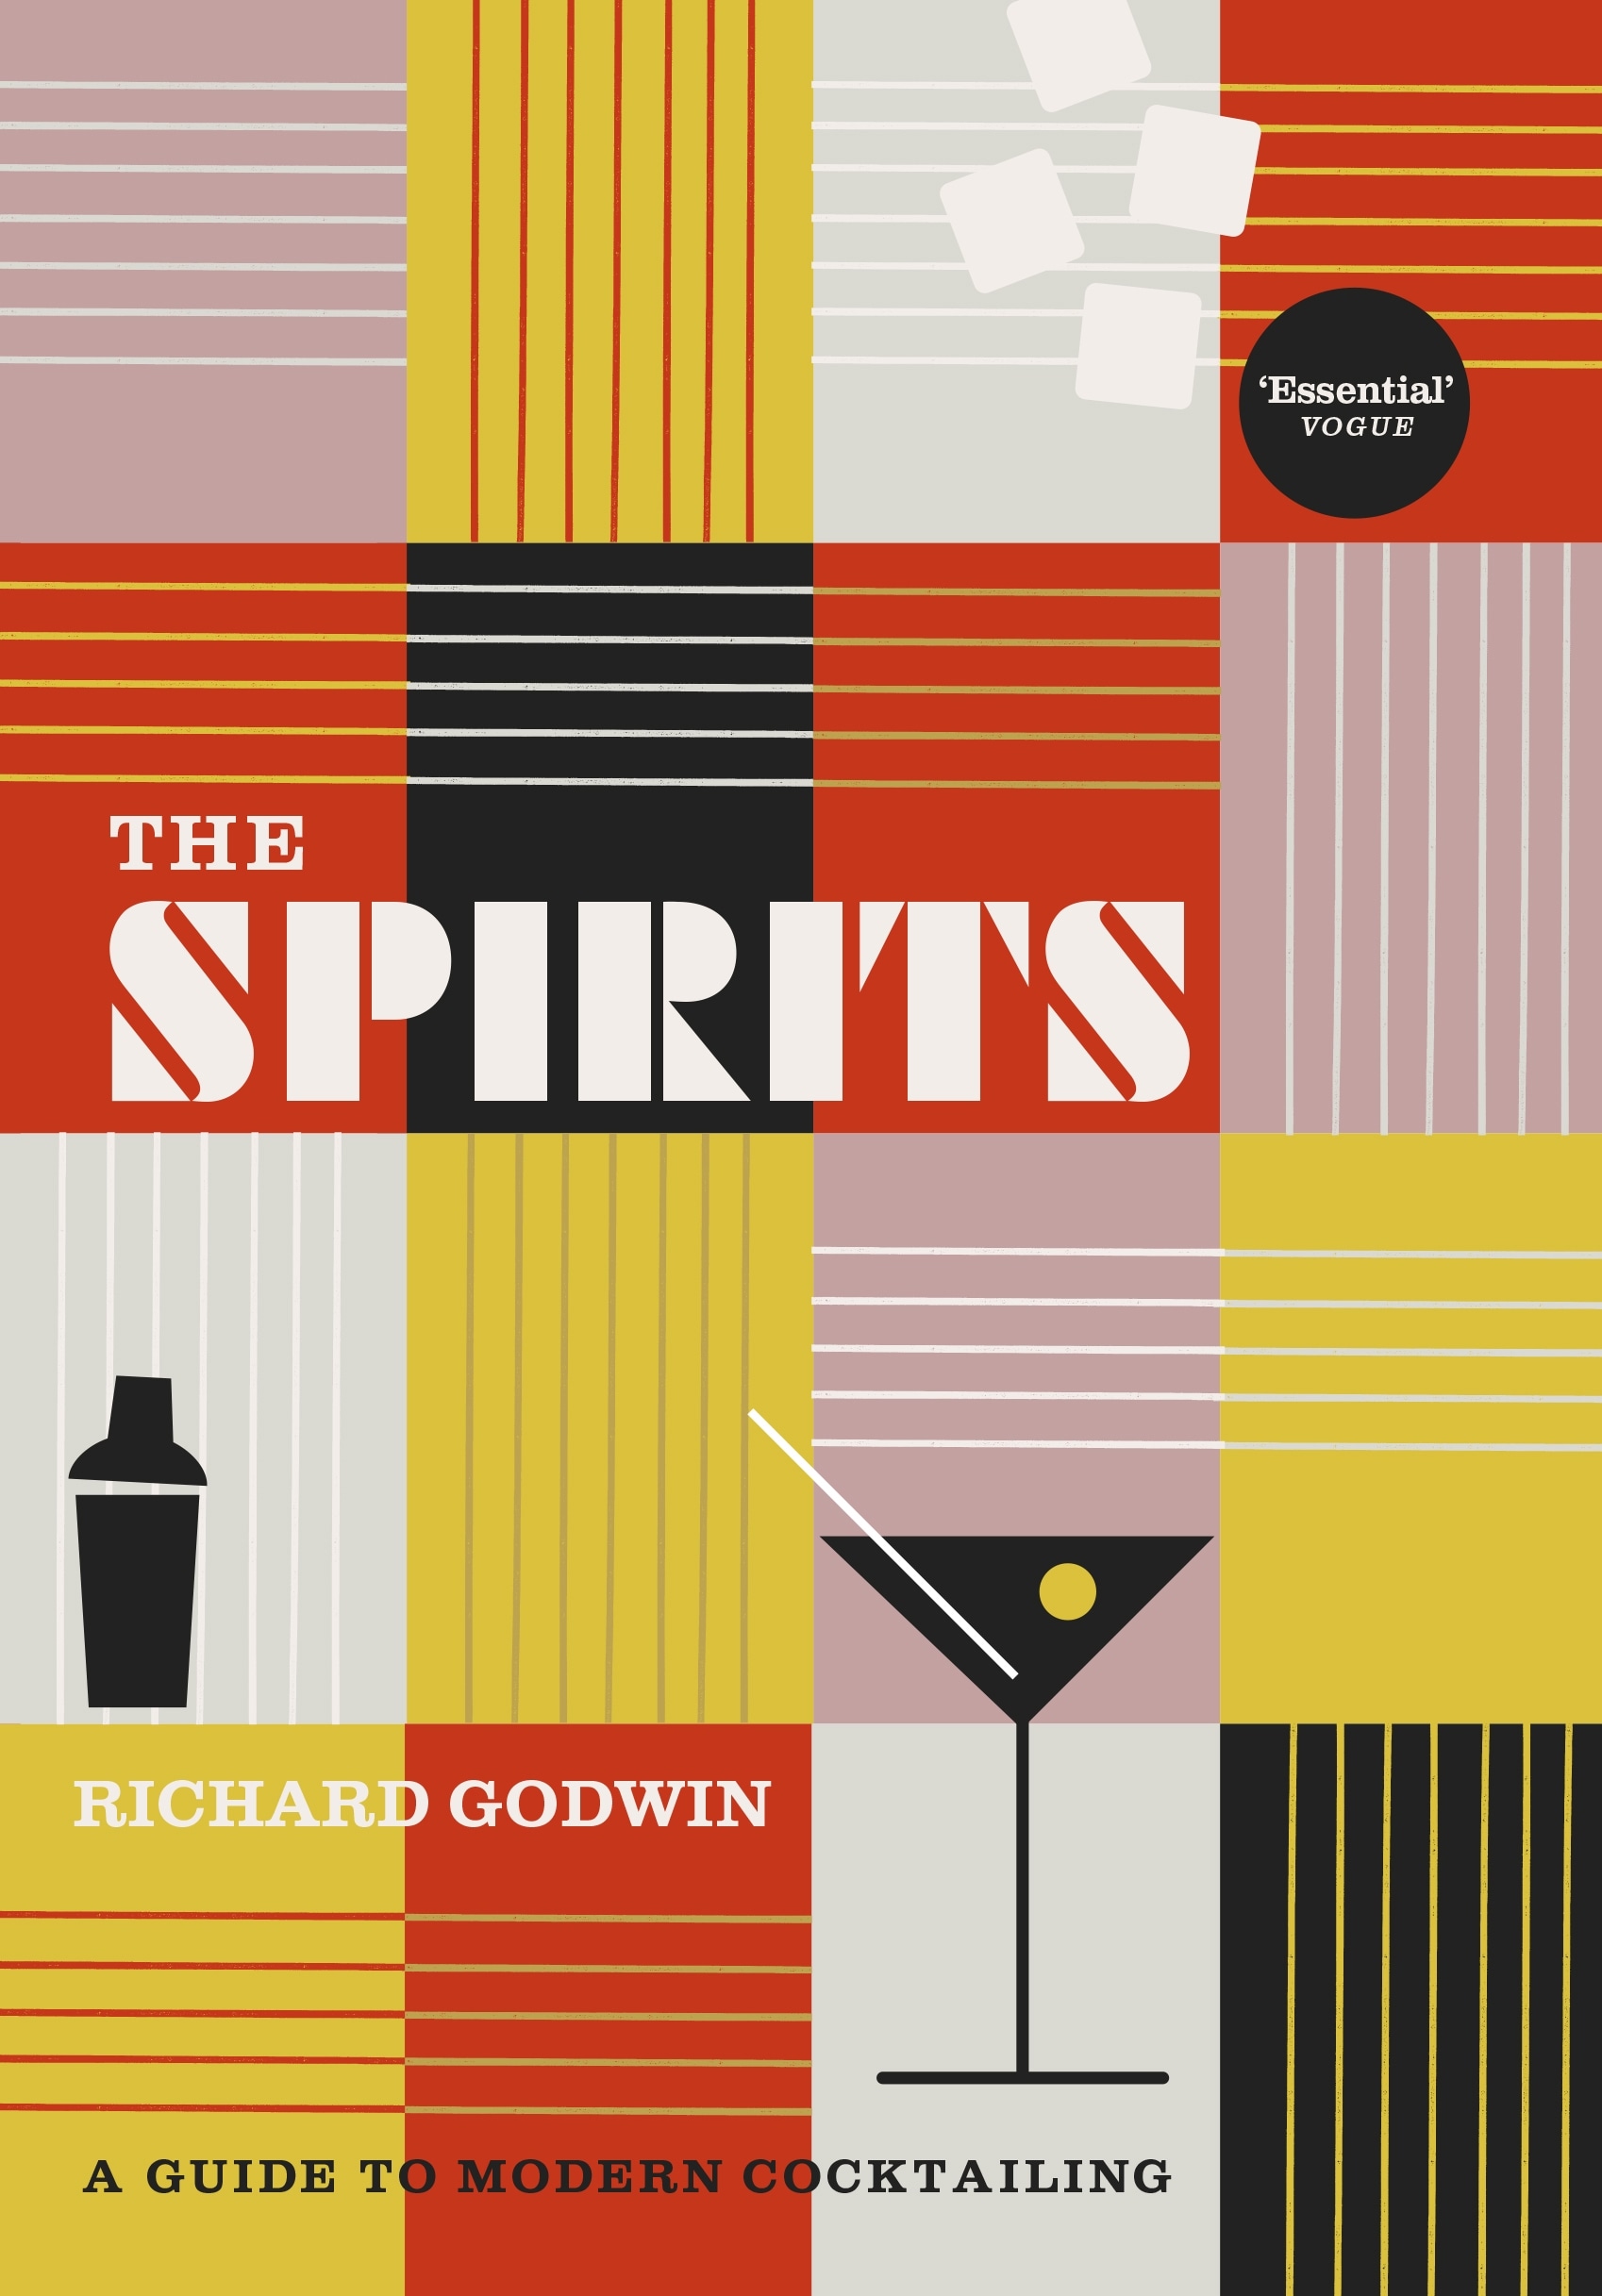 Book “The Spirits” by Richard Godwin — September 30, 2021